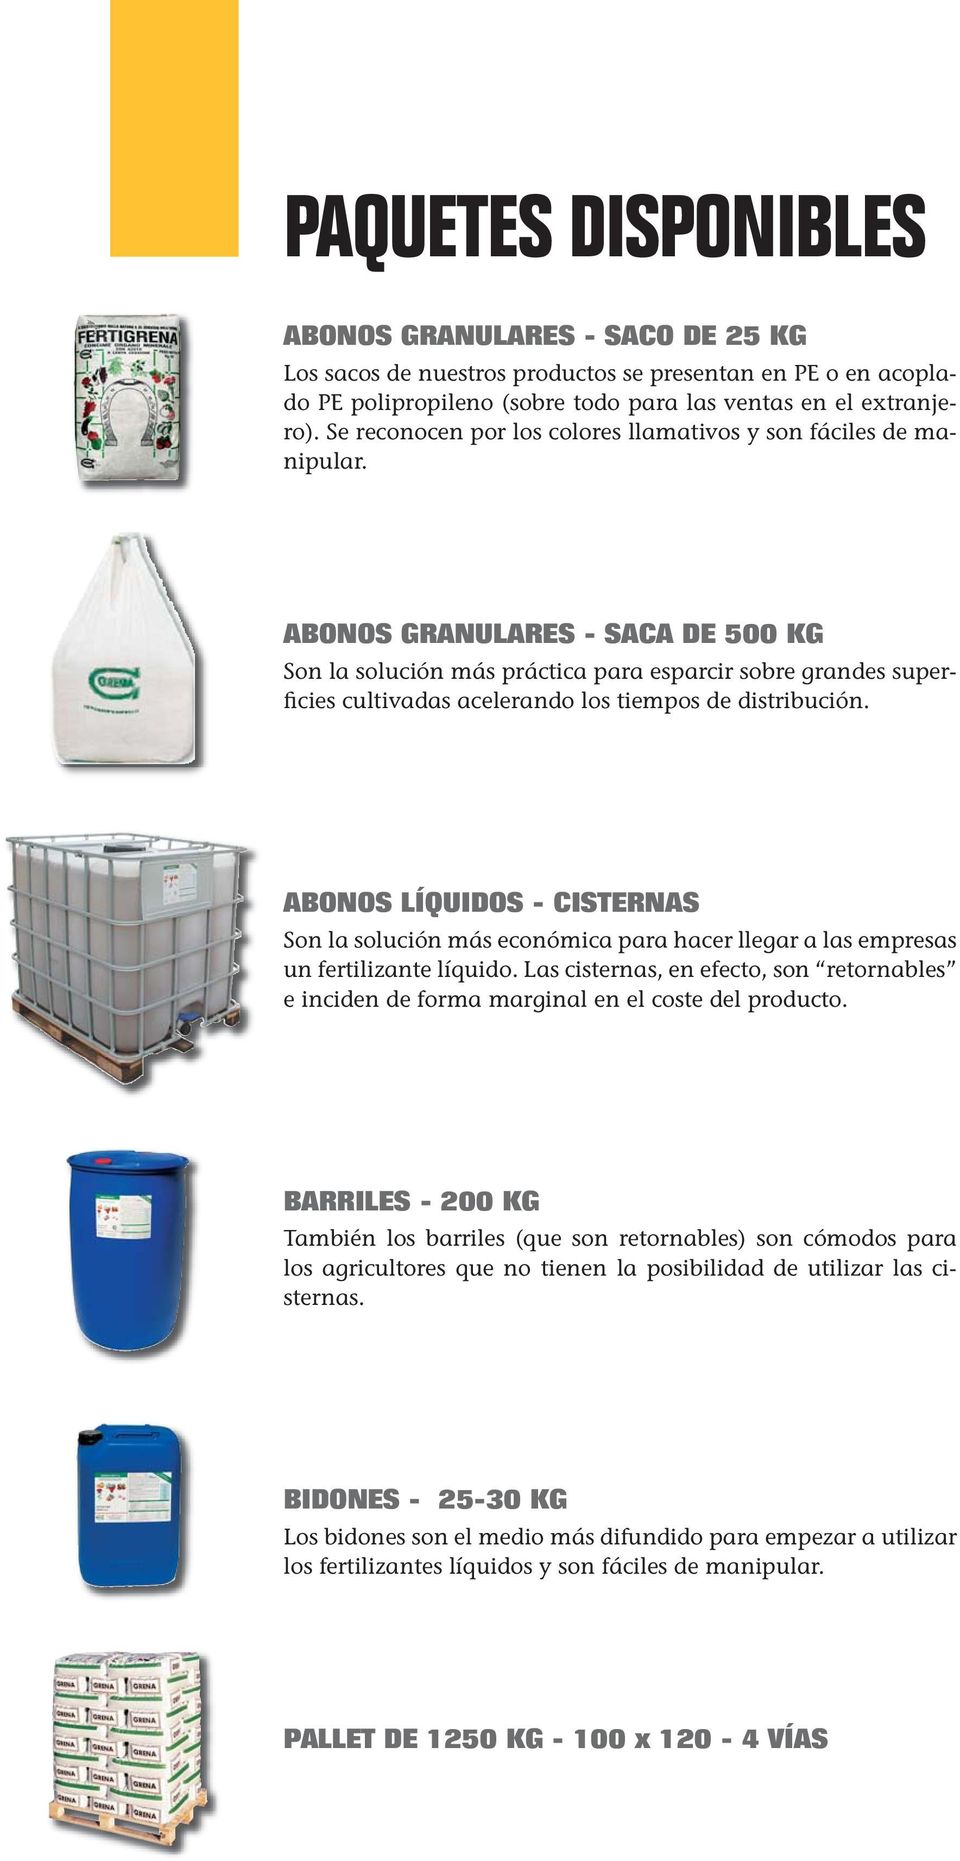 ABONOS GRANULARES - SACA DE 500 KG Son la solución más práctica para esparcir sobre grandes superficies cultivadas acelerando los tiempos de distribución.